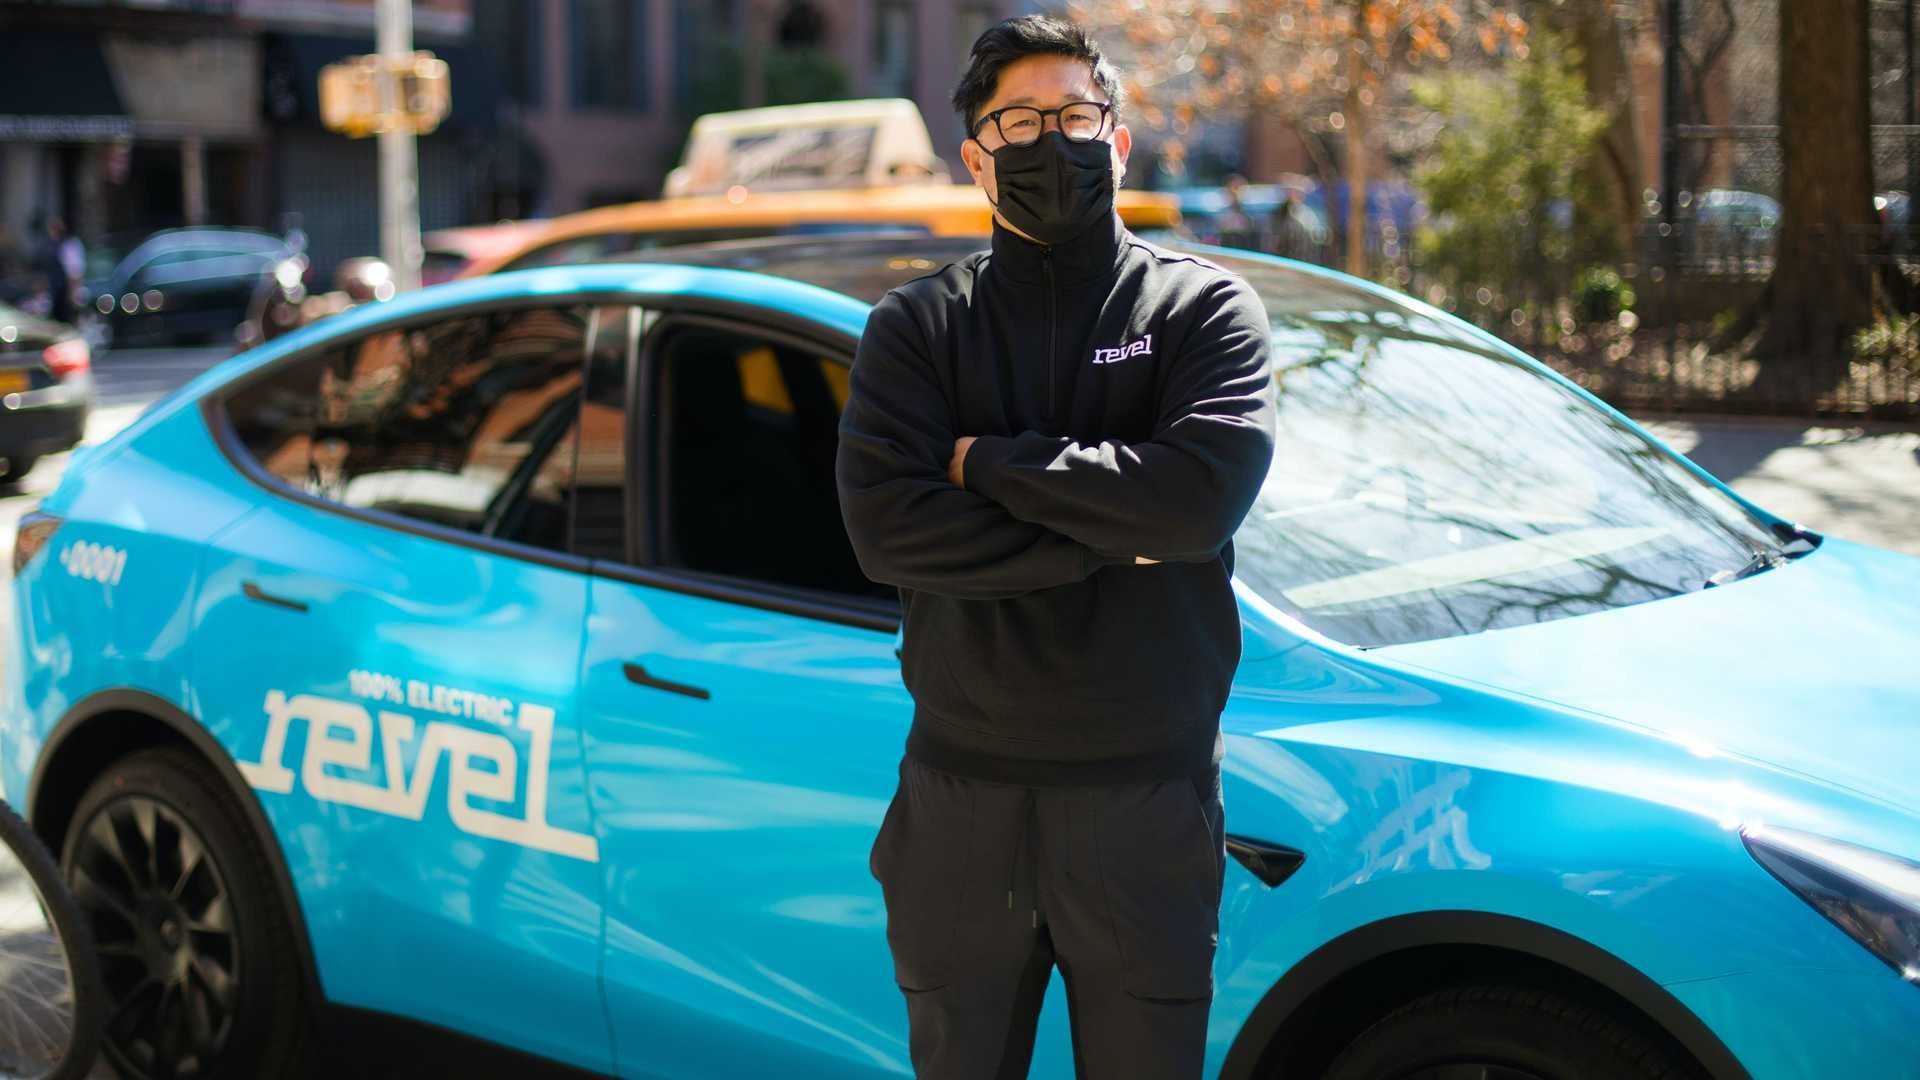 Revel намерена заполонить улицы Манхэттена c новым сервисом Tesla-такси